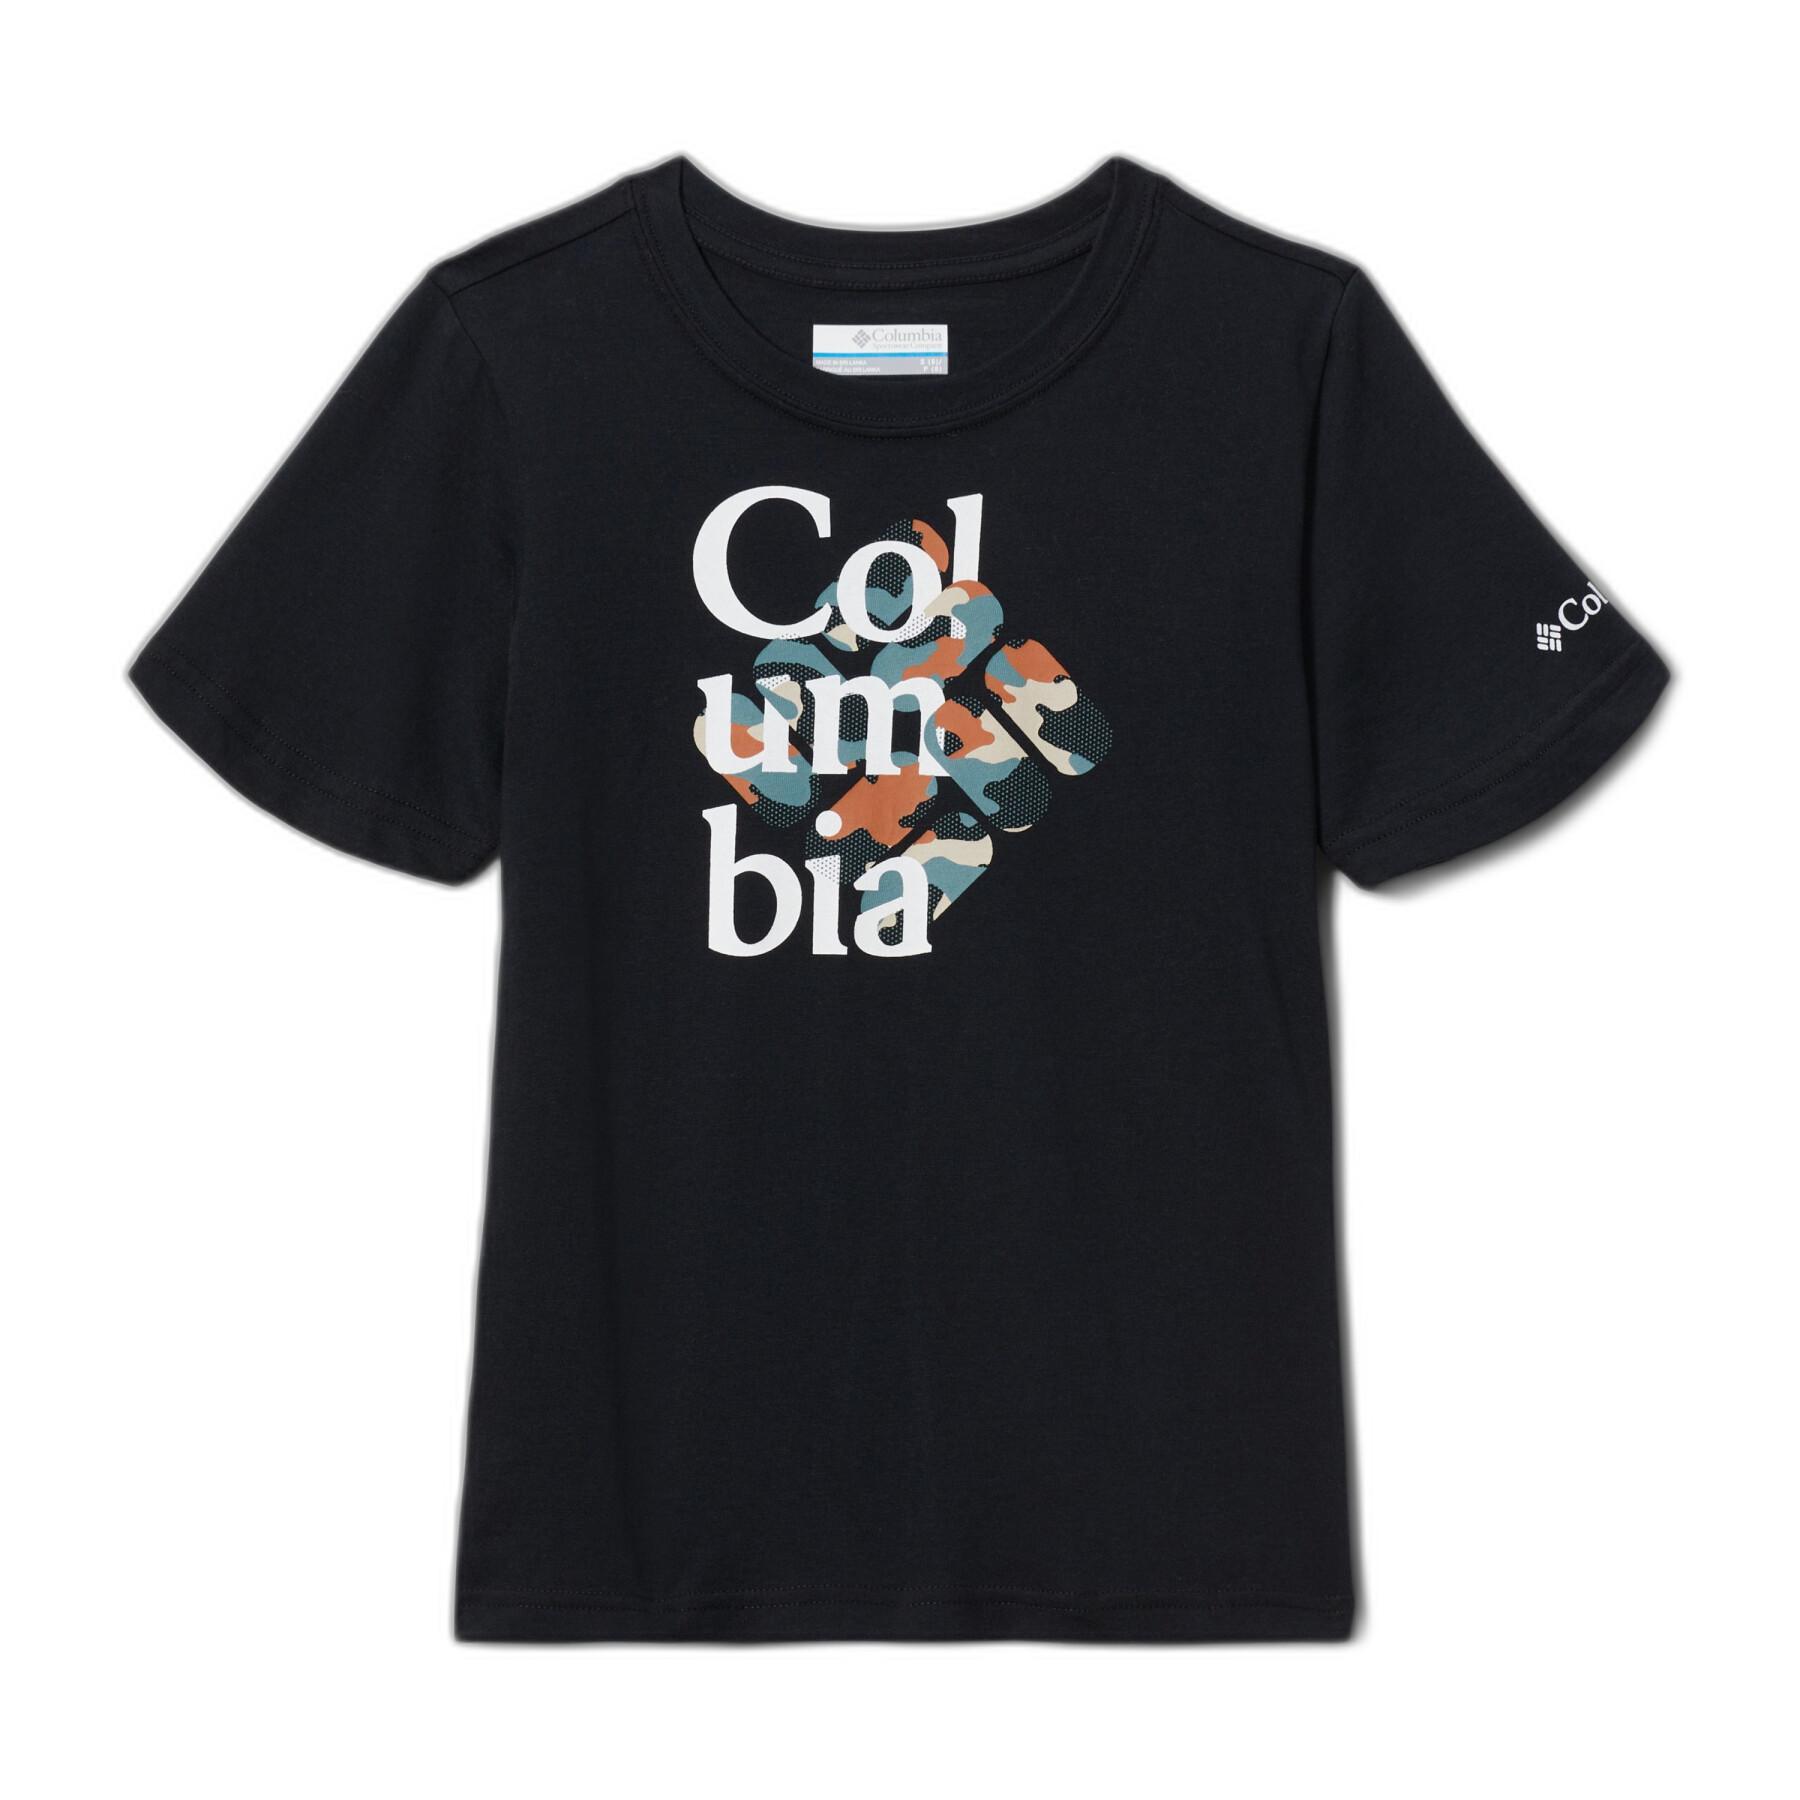 Camiseta para niños Columbia Graphic Basin Ridge™